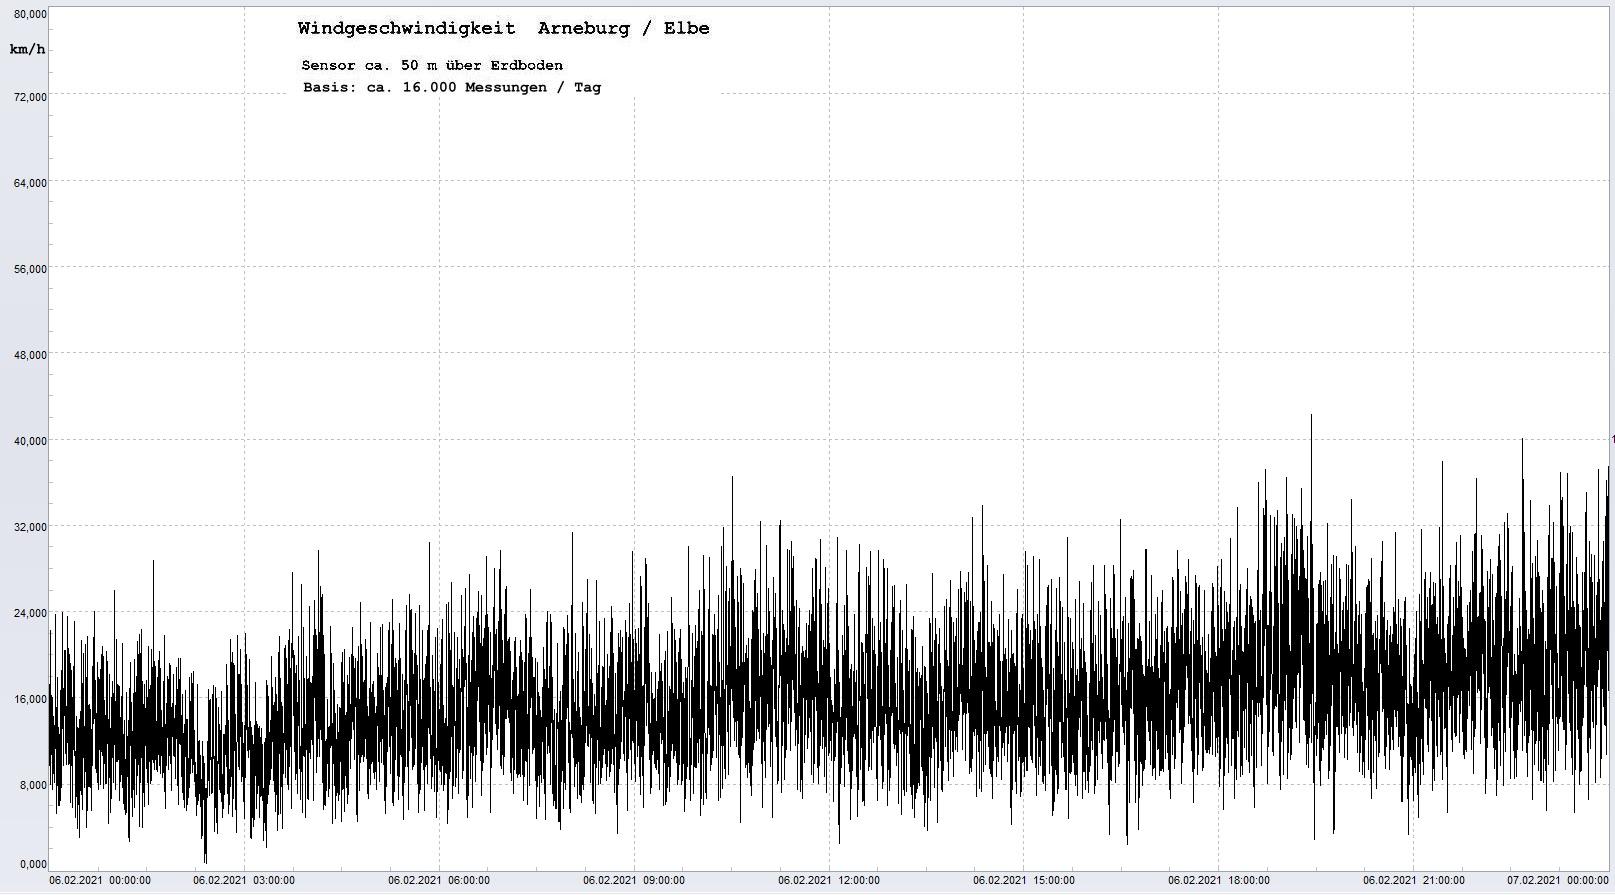 Arneburg Tages-Diagramm Winddaten, 06.02.2021
  Histogramm, Sensor auf Gebude, ca. 50 m ber Erdboden, Basis: 5s-Aufzeichnung